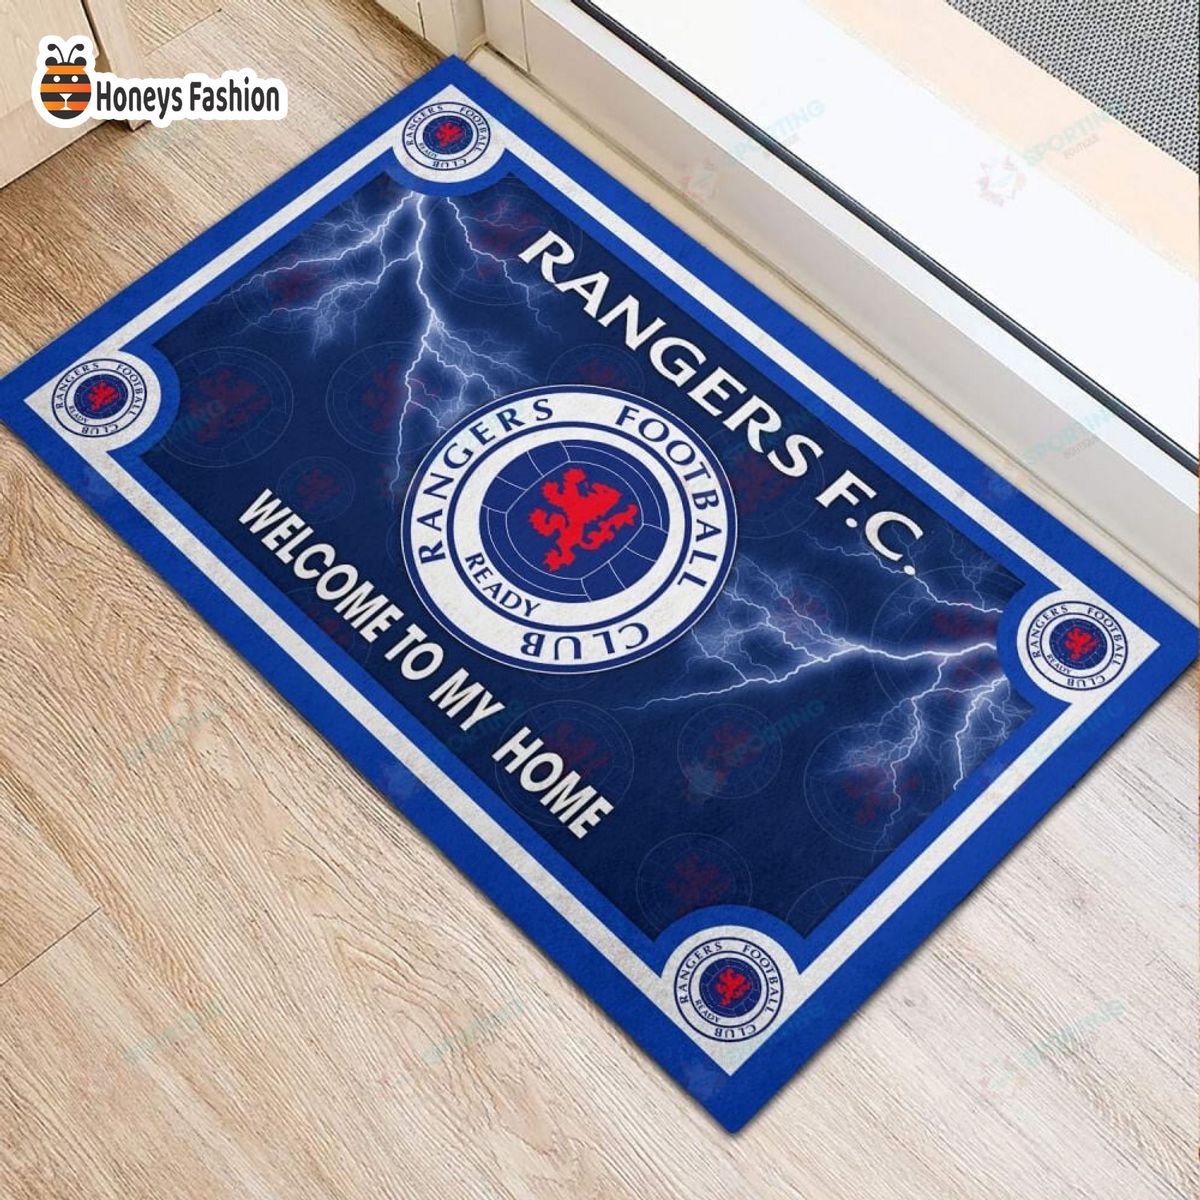 Rangers F.C. welcome to my home doormat